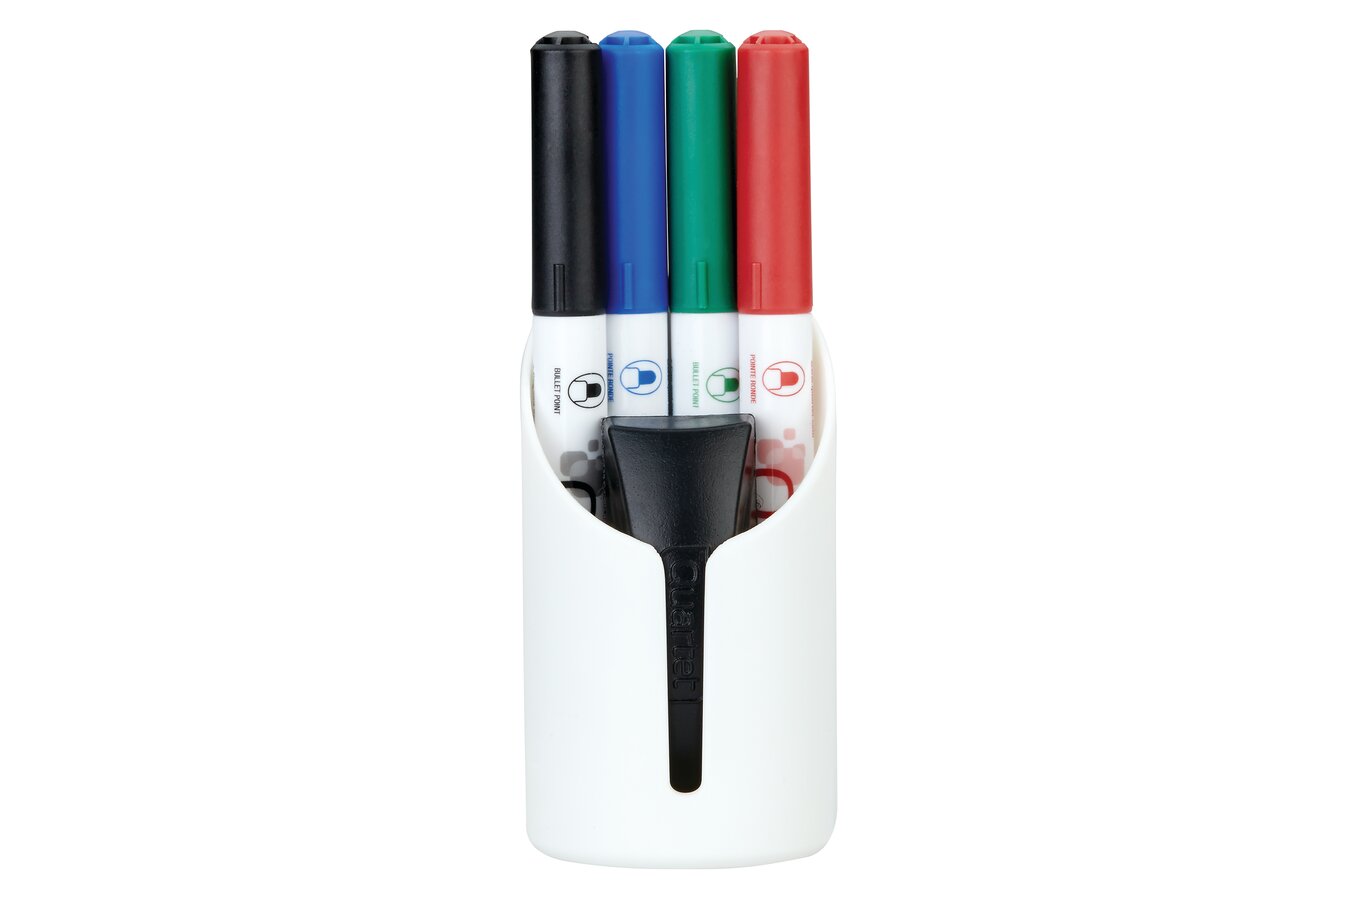 Quartet EnduraGlide Dry-Erase Kit, Caddy, Chisel Tip Dry-Erase Markers,  Eraser, Markers & Accessories